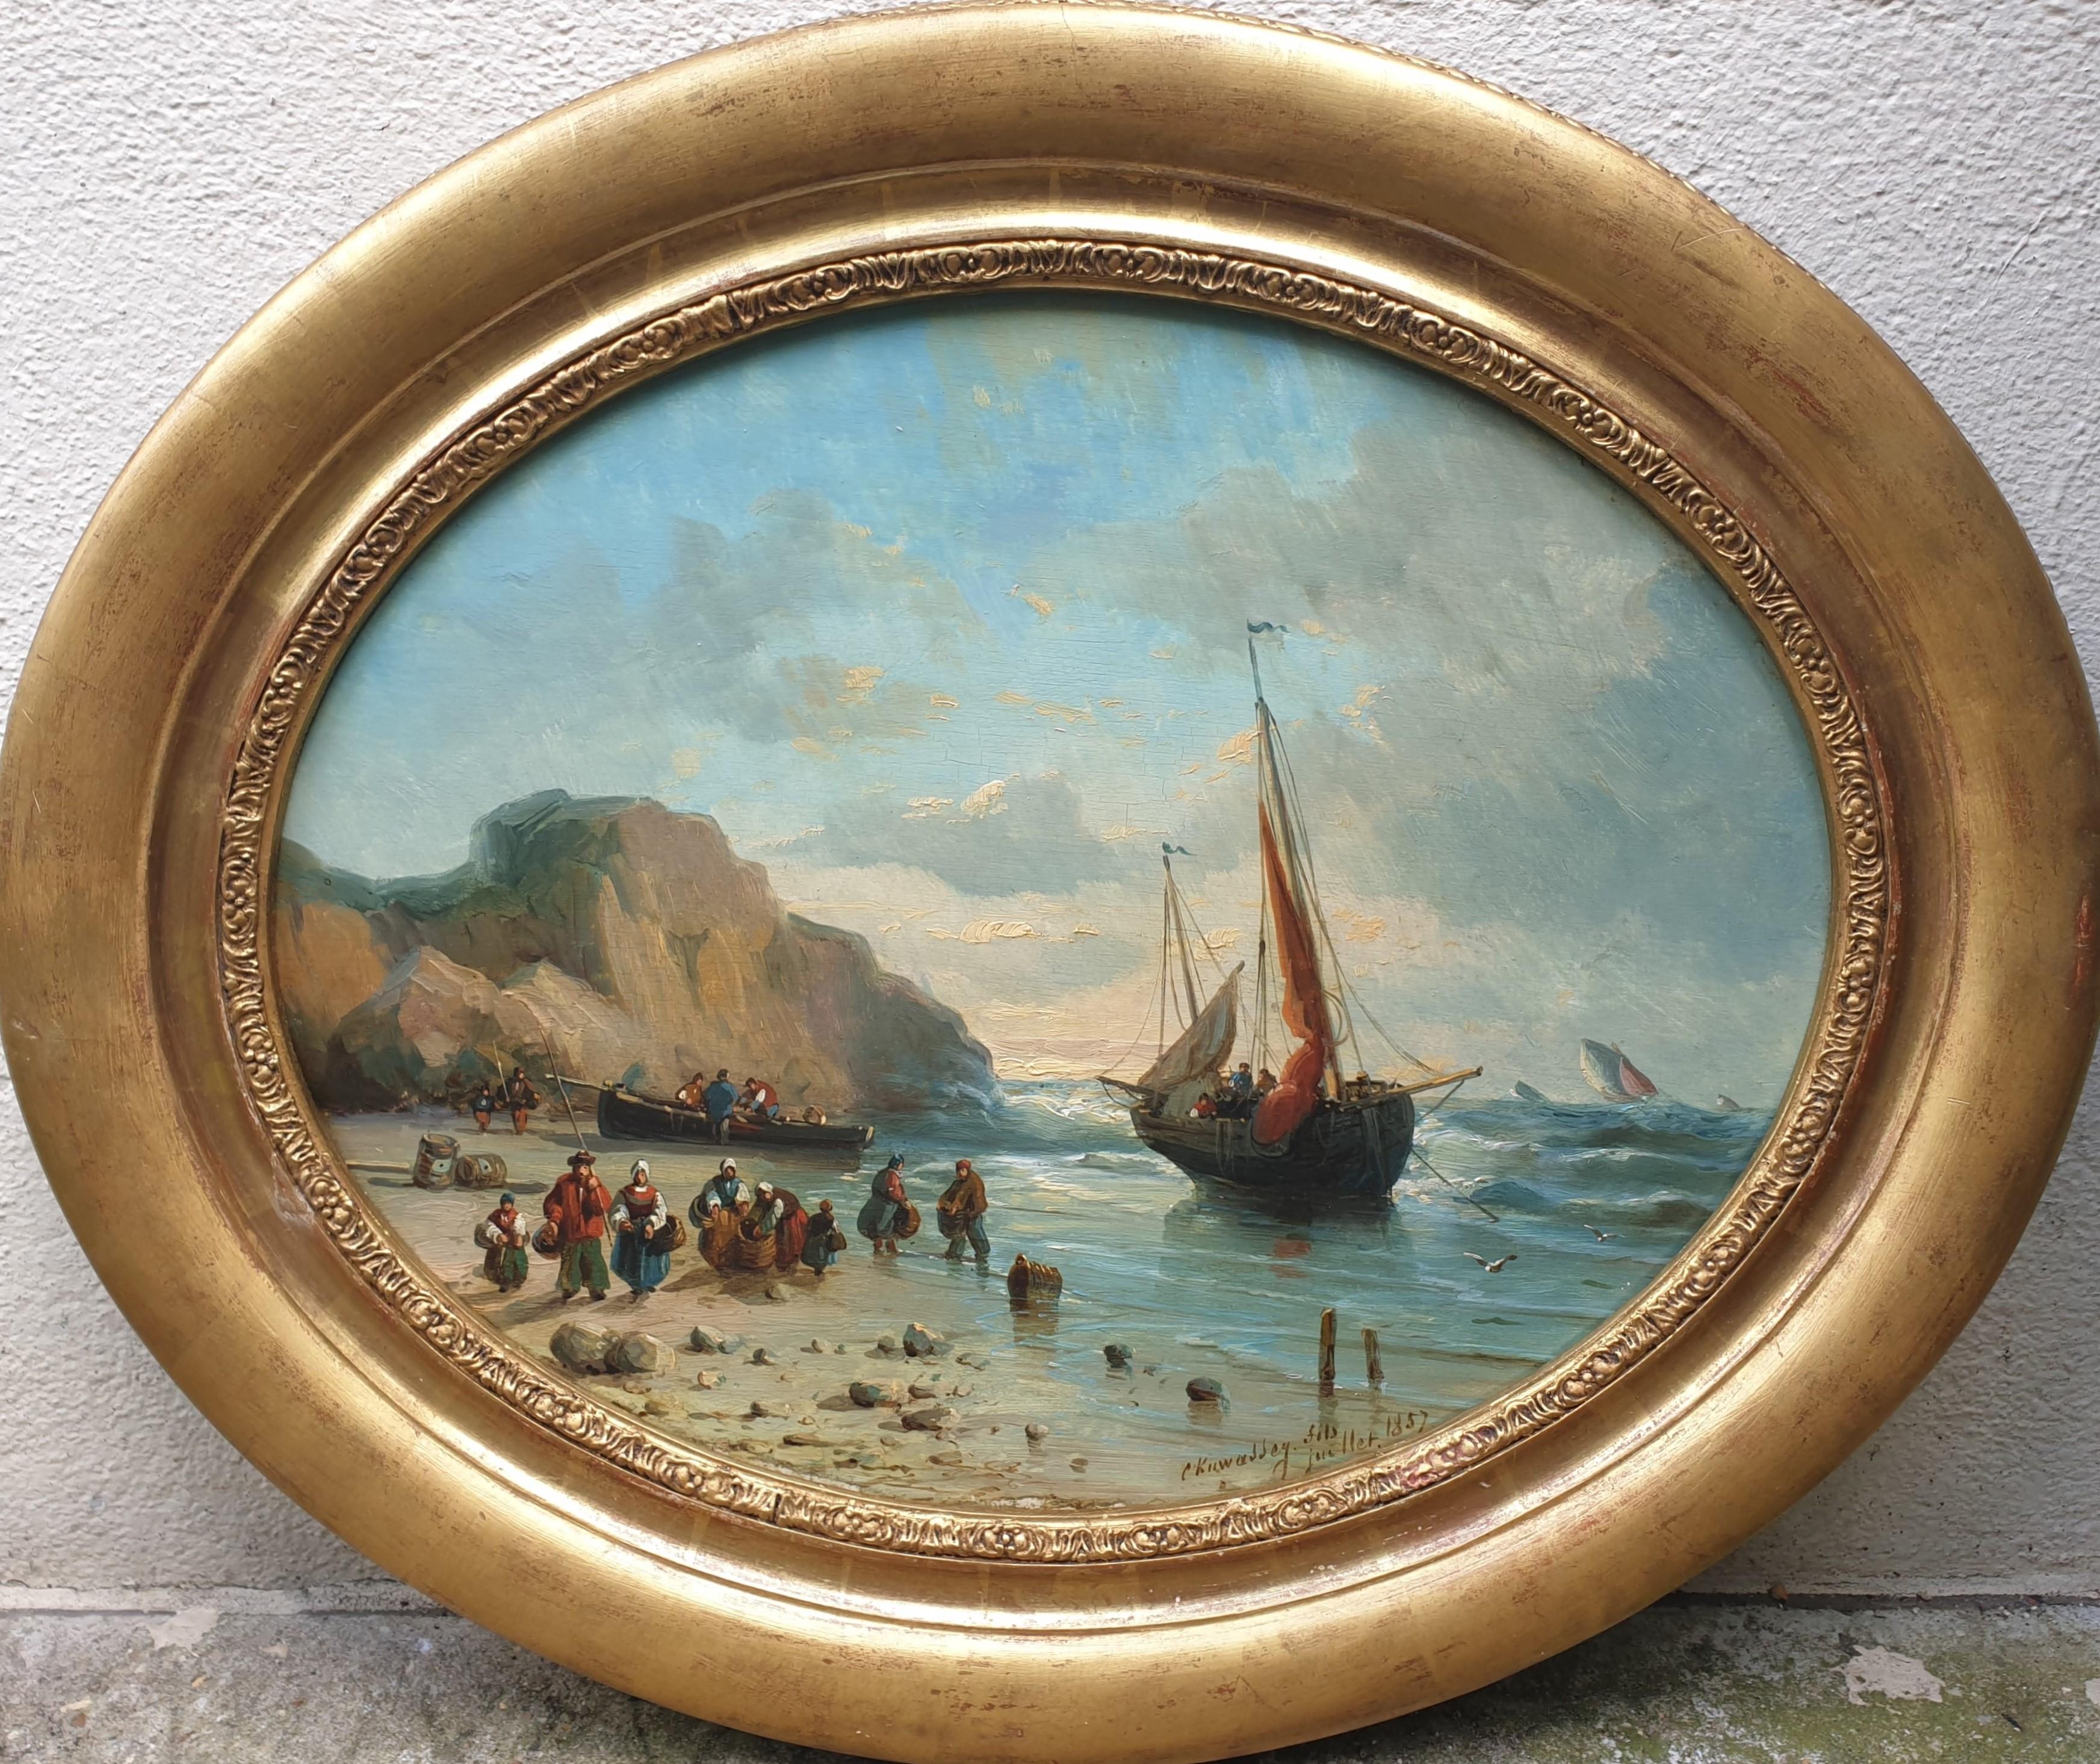 Landscape Painting Charles Euphrasie Kuwasseg - Peinture de KUWASSEG ovale bateaux de plage français romantiques Normandie 19e 